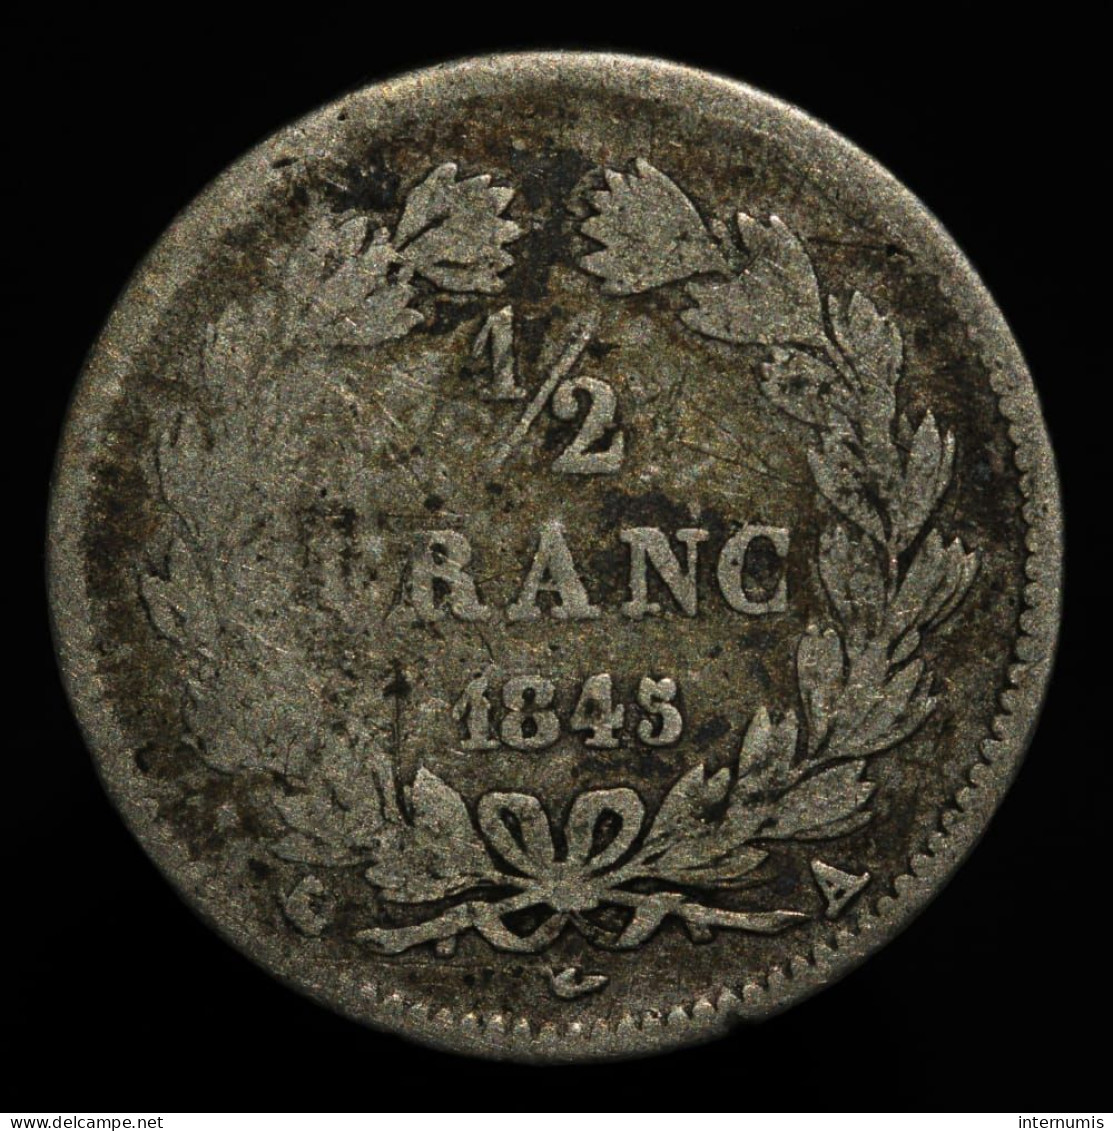 RARE - France, Louis-Philippe, 1/2 Franc, 1845, A - Paris, Argent (Silver), B+ (F), KM#741.1, G.408,  F.182/108 - 1/2 Franc